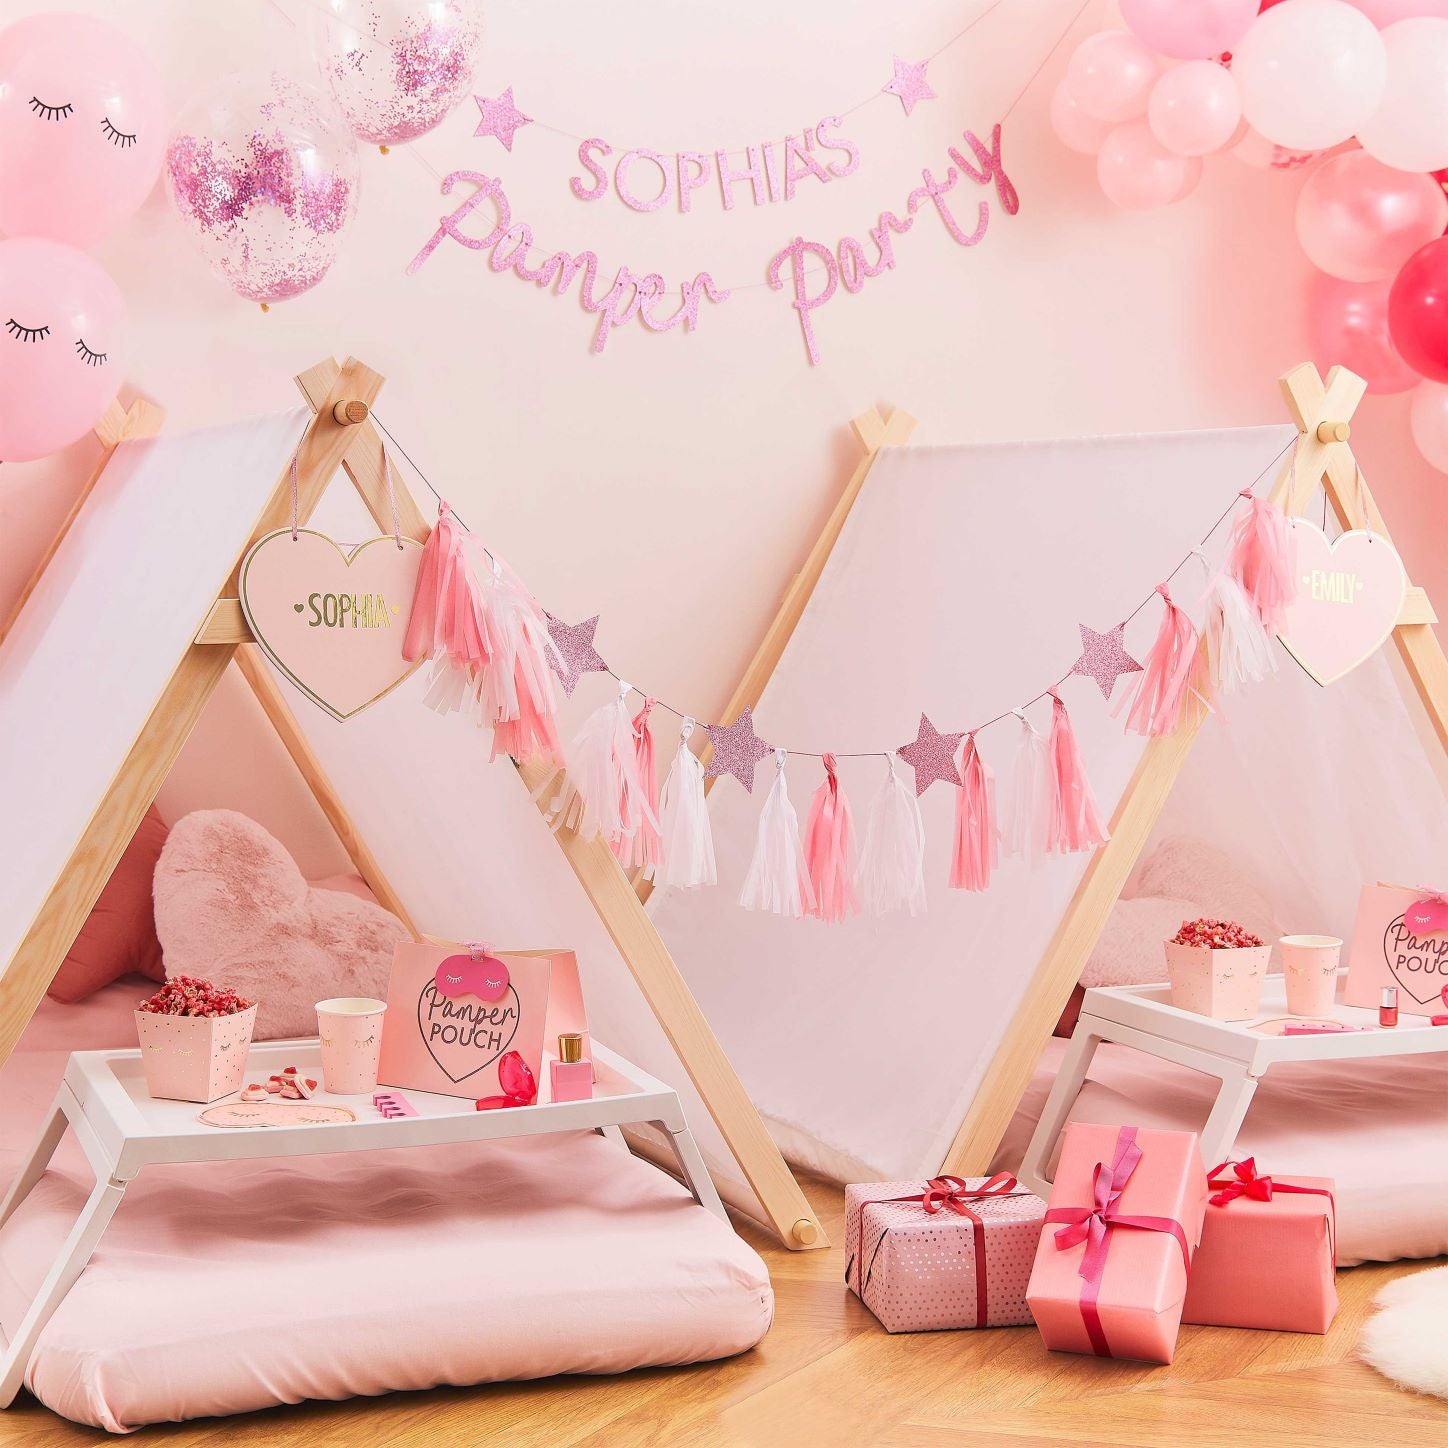 Sophias pamper party - Pink